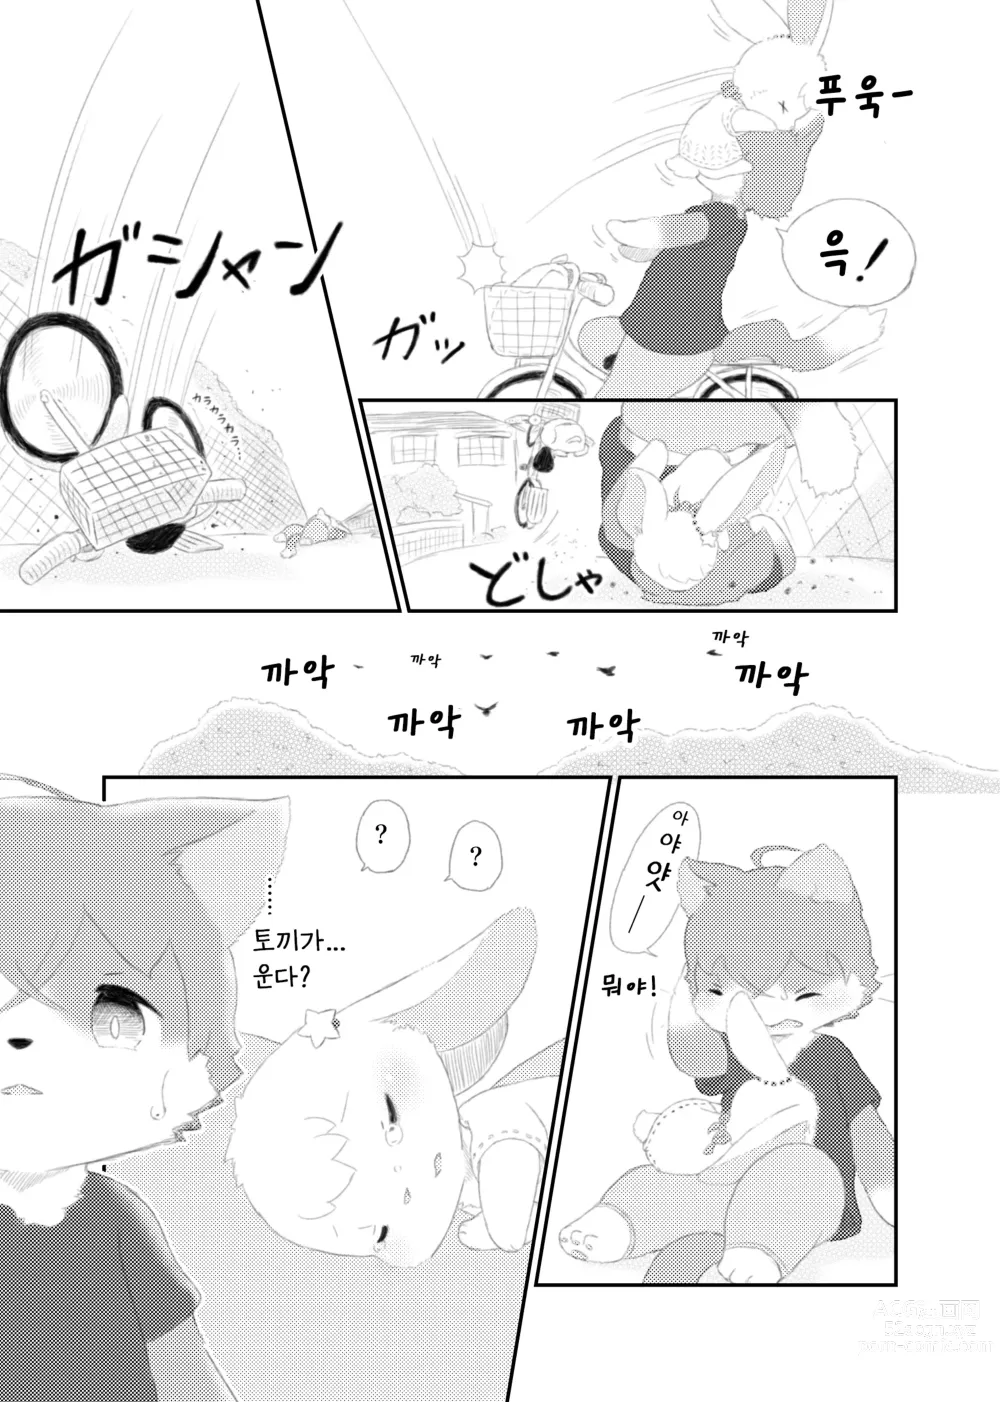 Page 7 of doujinshi 달토끼통신 1화